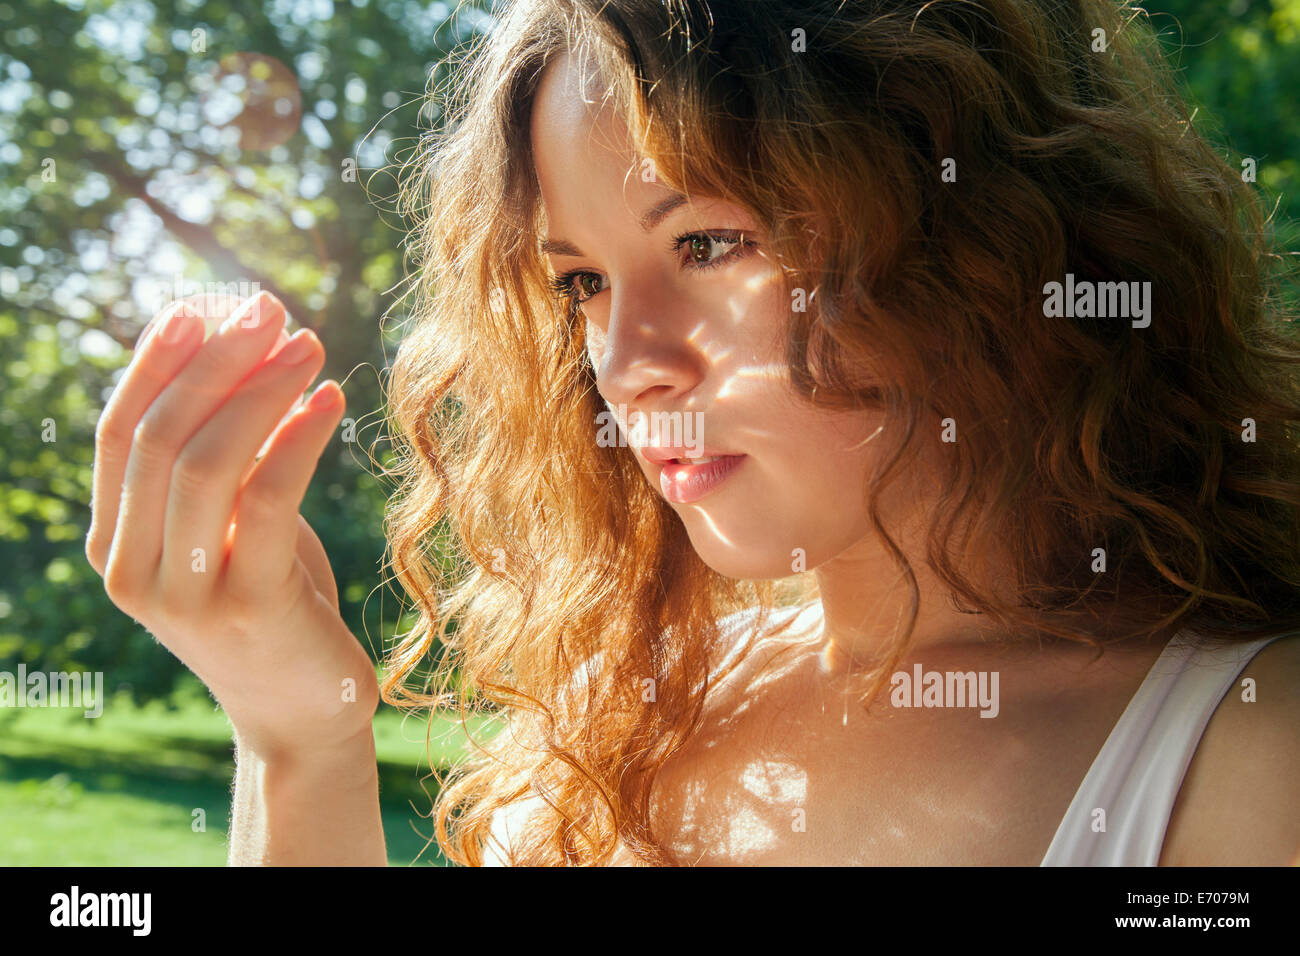 Portrait de jeune femme à regarder quelque chose en main rougeoyante Banque D'Images